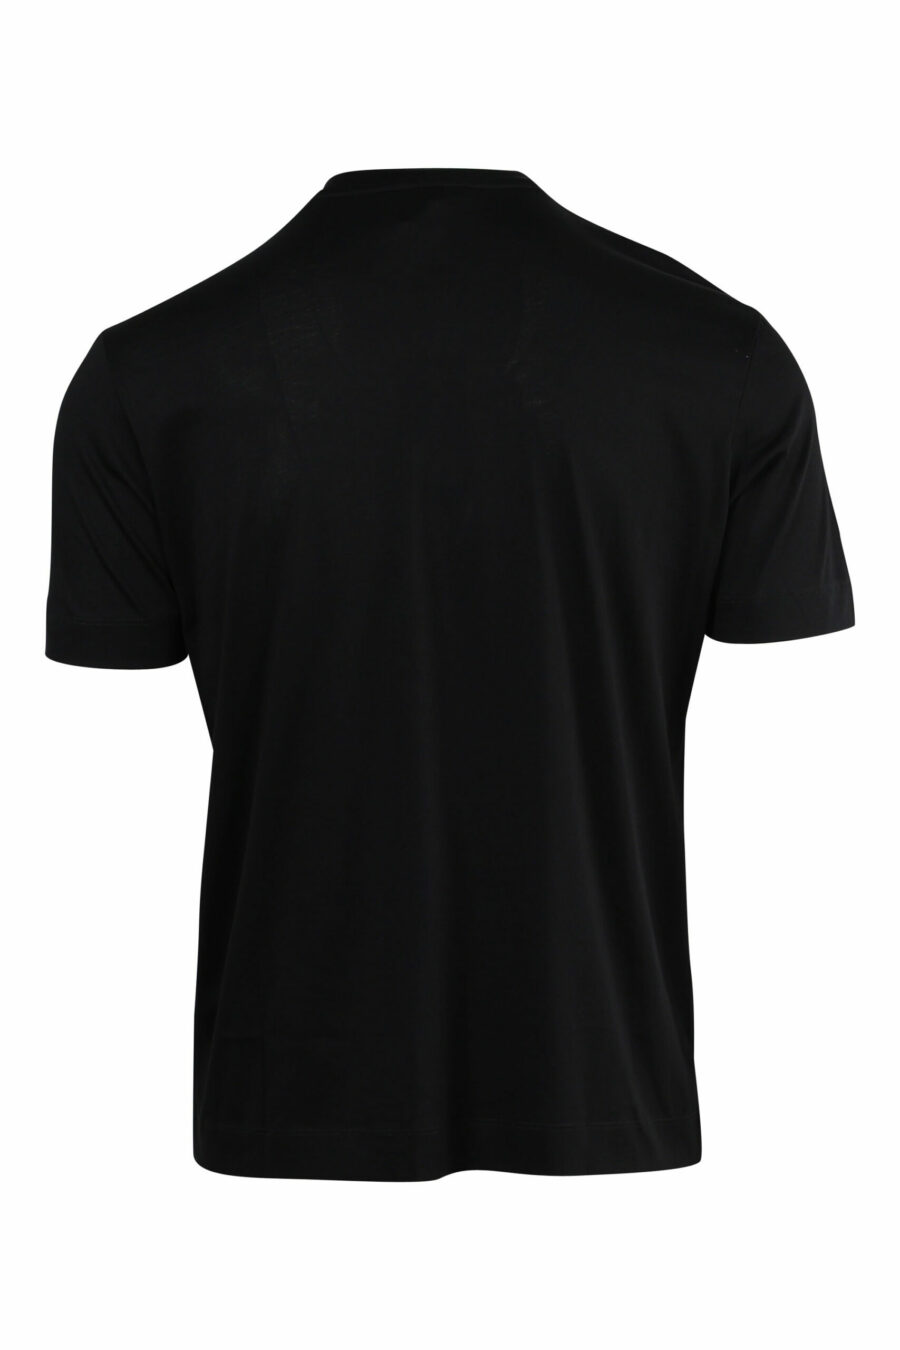 T-shirt preta com maxilogo de águia em relevo - 8057970433729 1 à escala